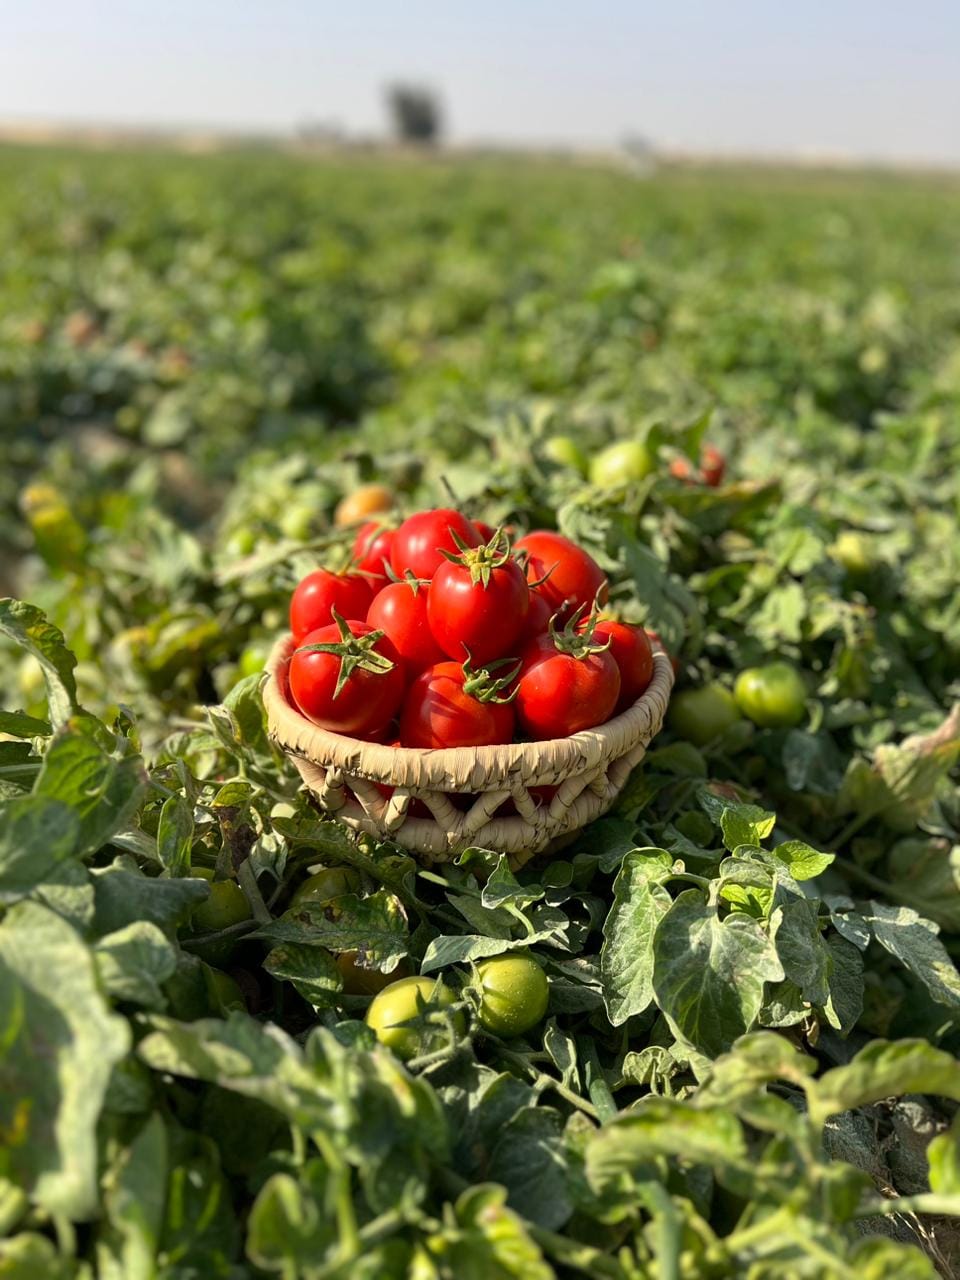 محصول الطماطم عقب حصاده فى المزارع